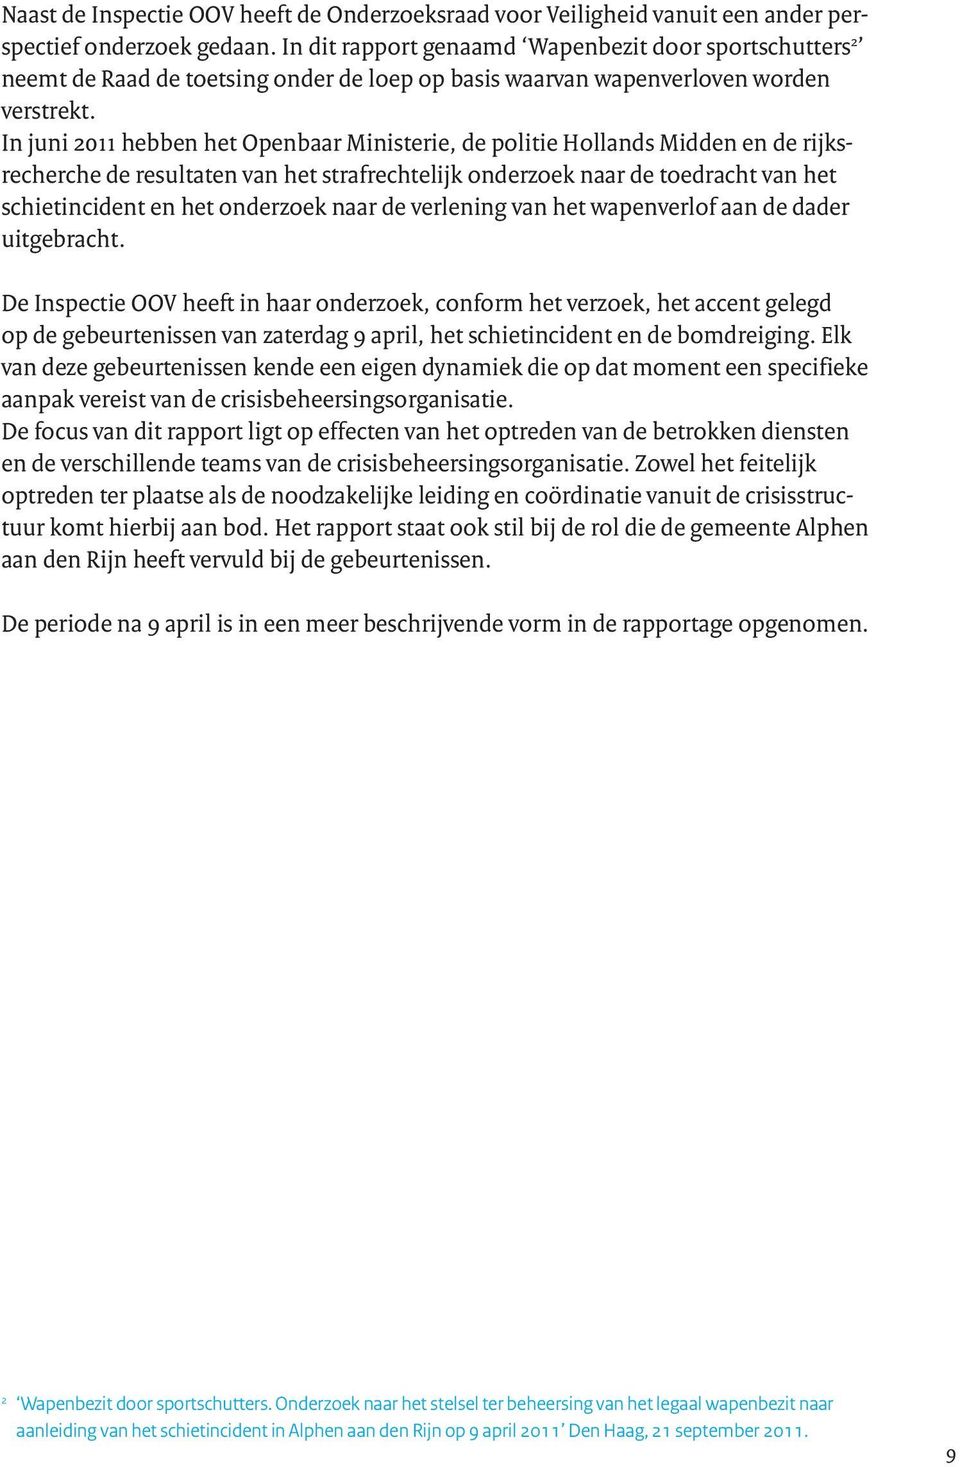 In juni 2011 hebben het Openbaar Ministerie, de politie Hollands Midden en de rijksrecherche de resultaten van het strafrechtelijk onderzoek naar de toedracht van het schietincident en het onderzoek